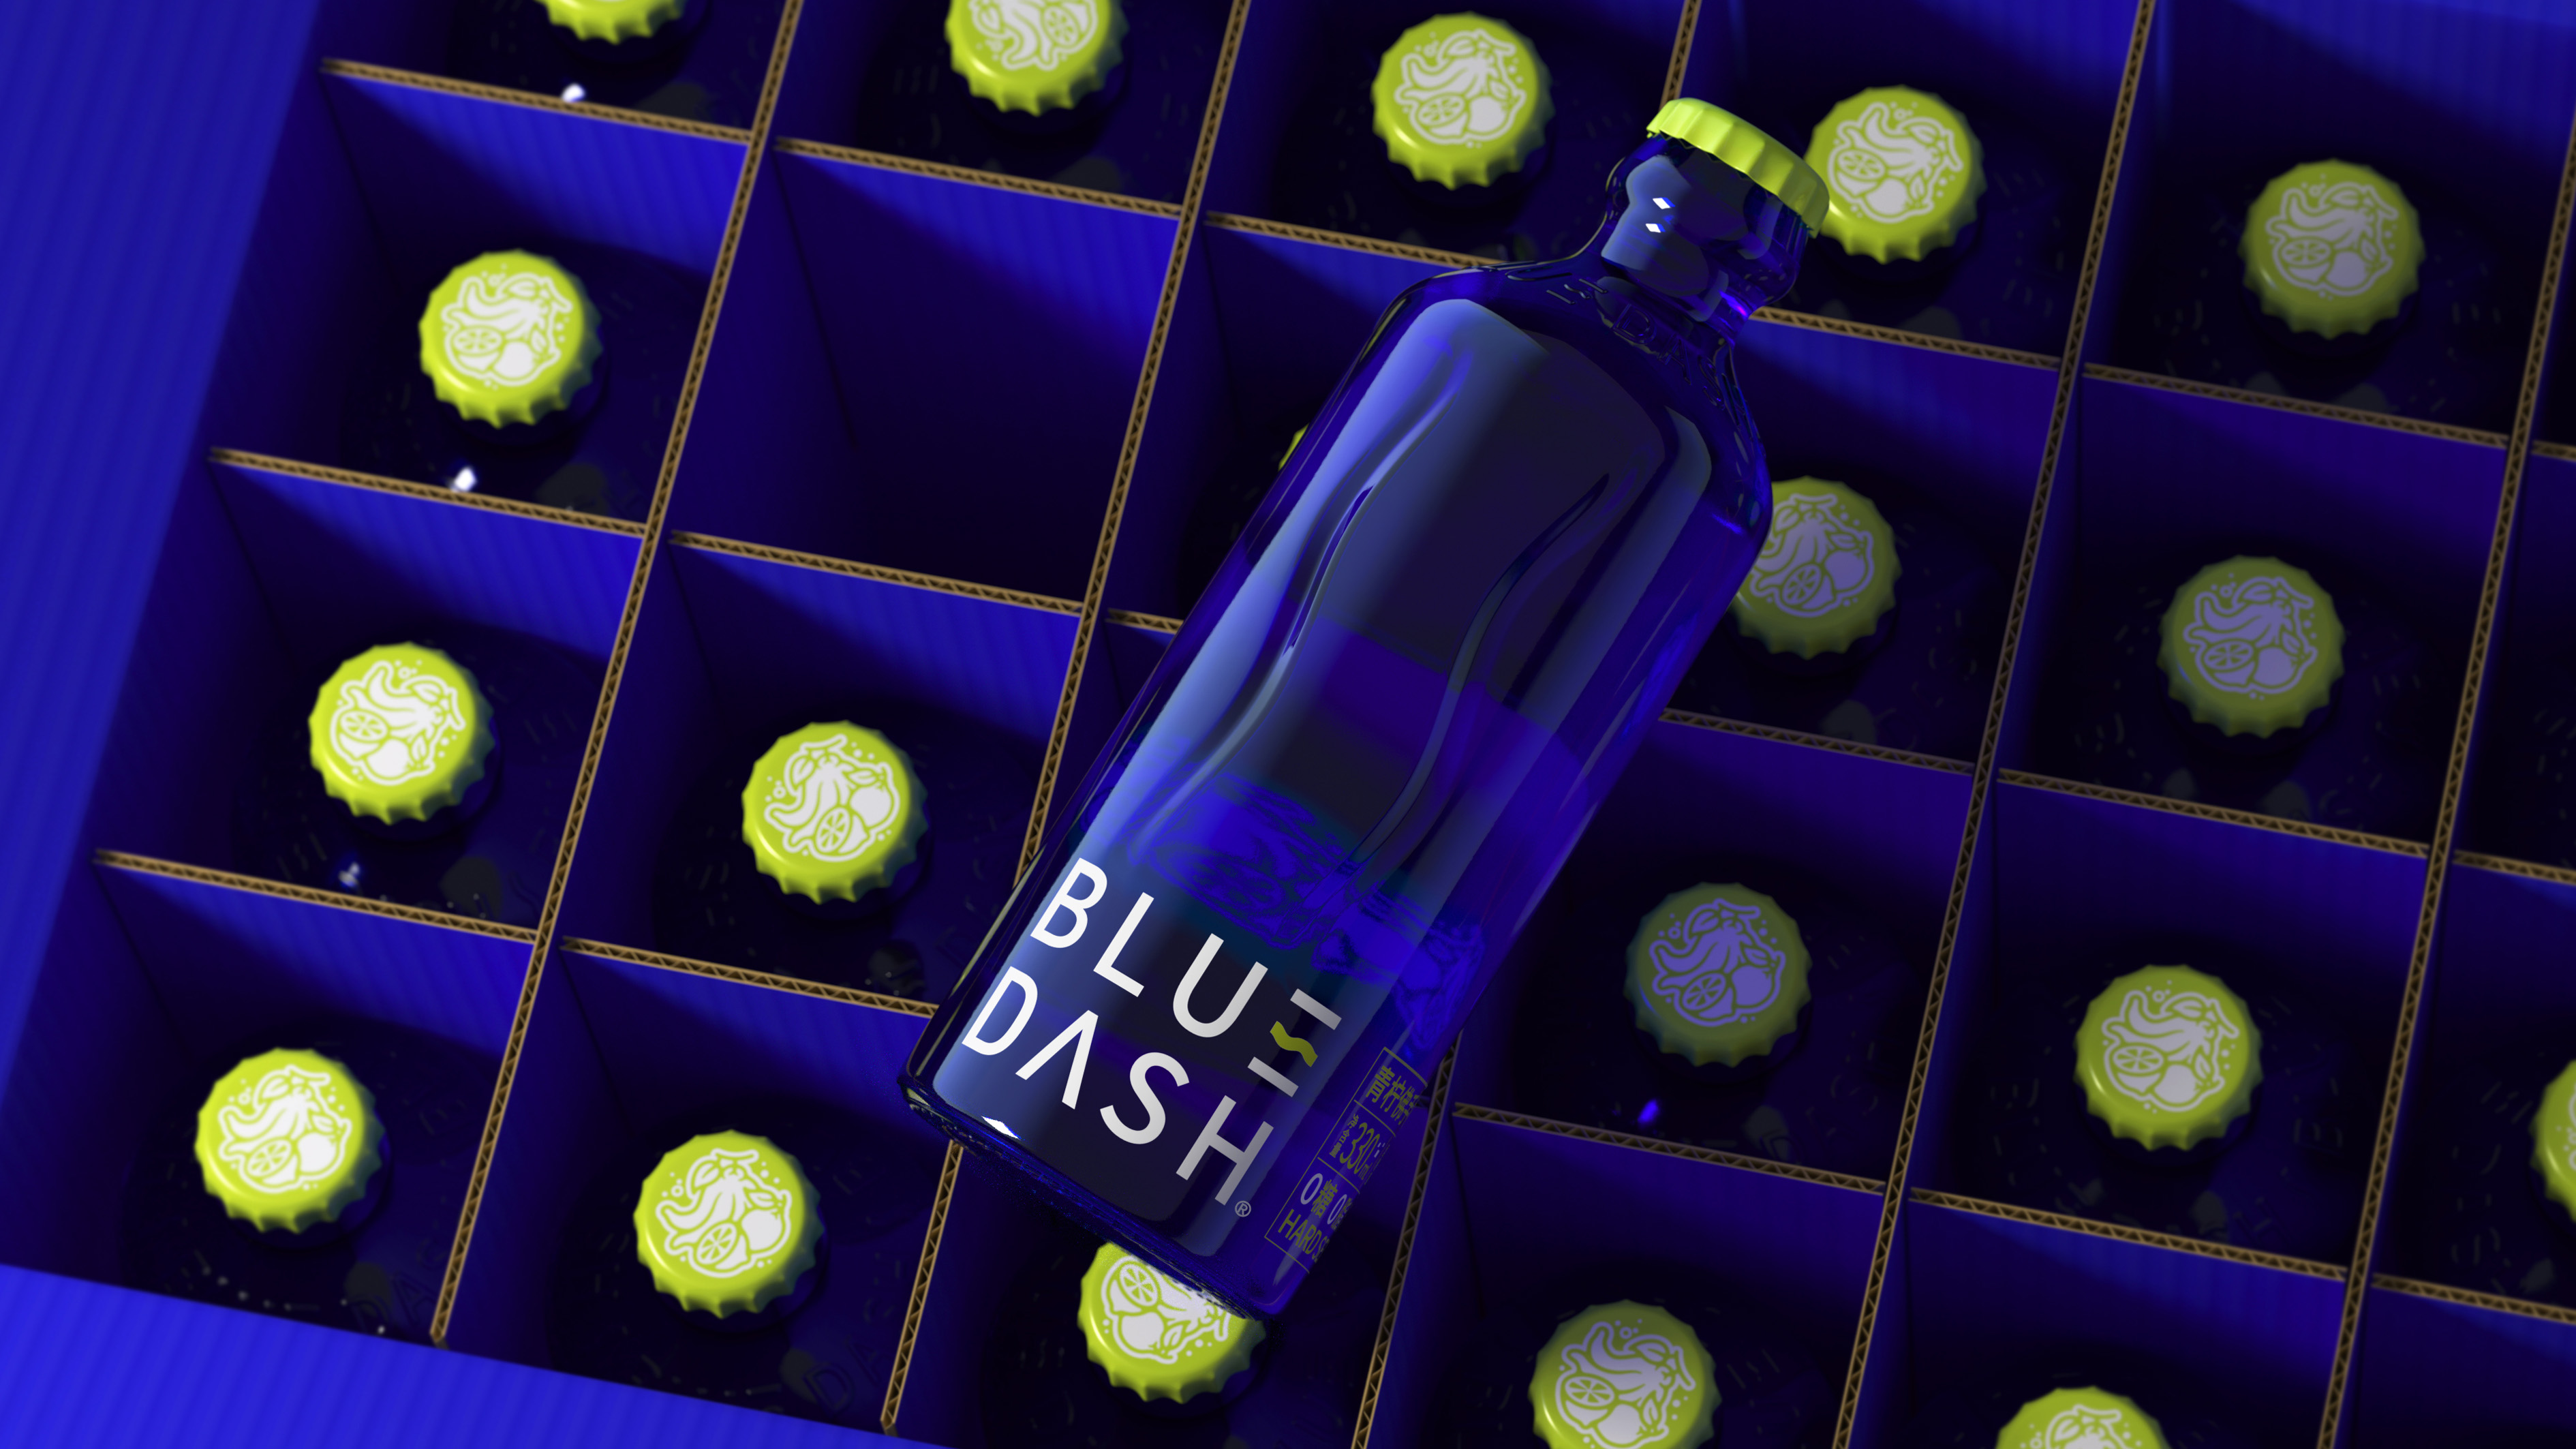 Blue Dash